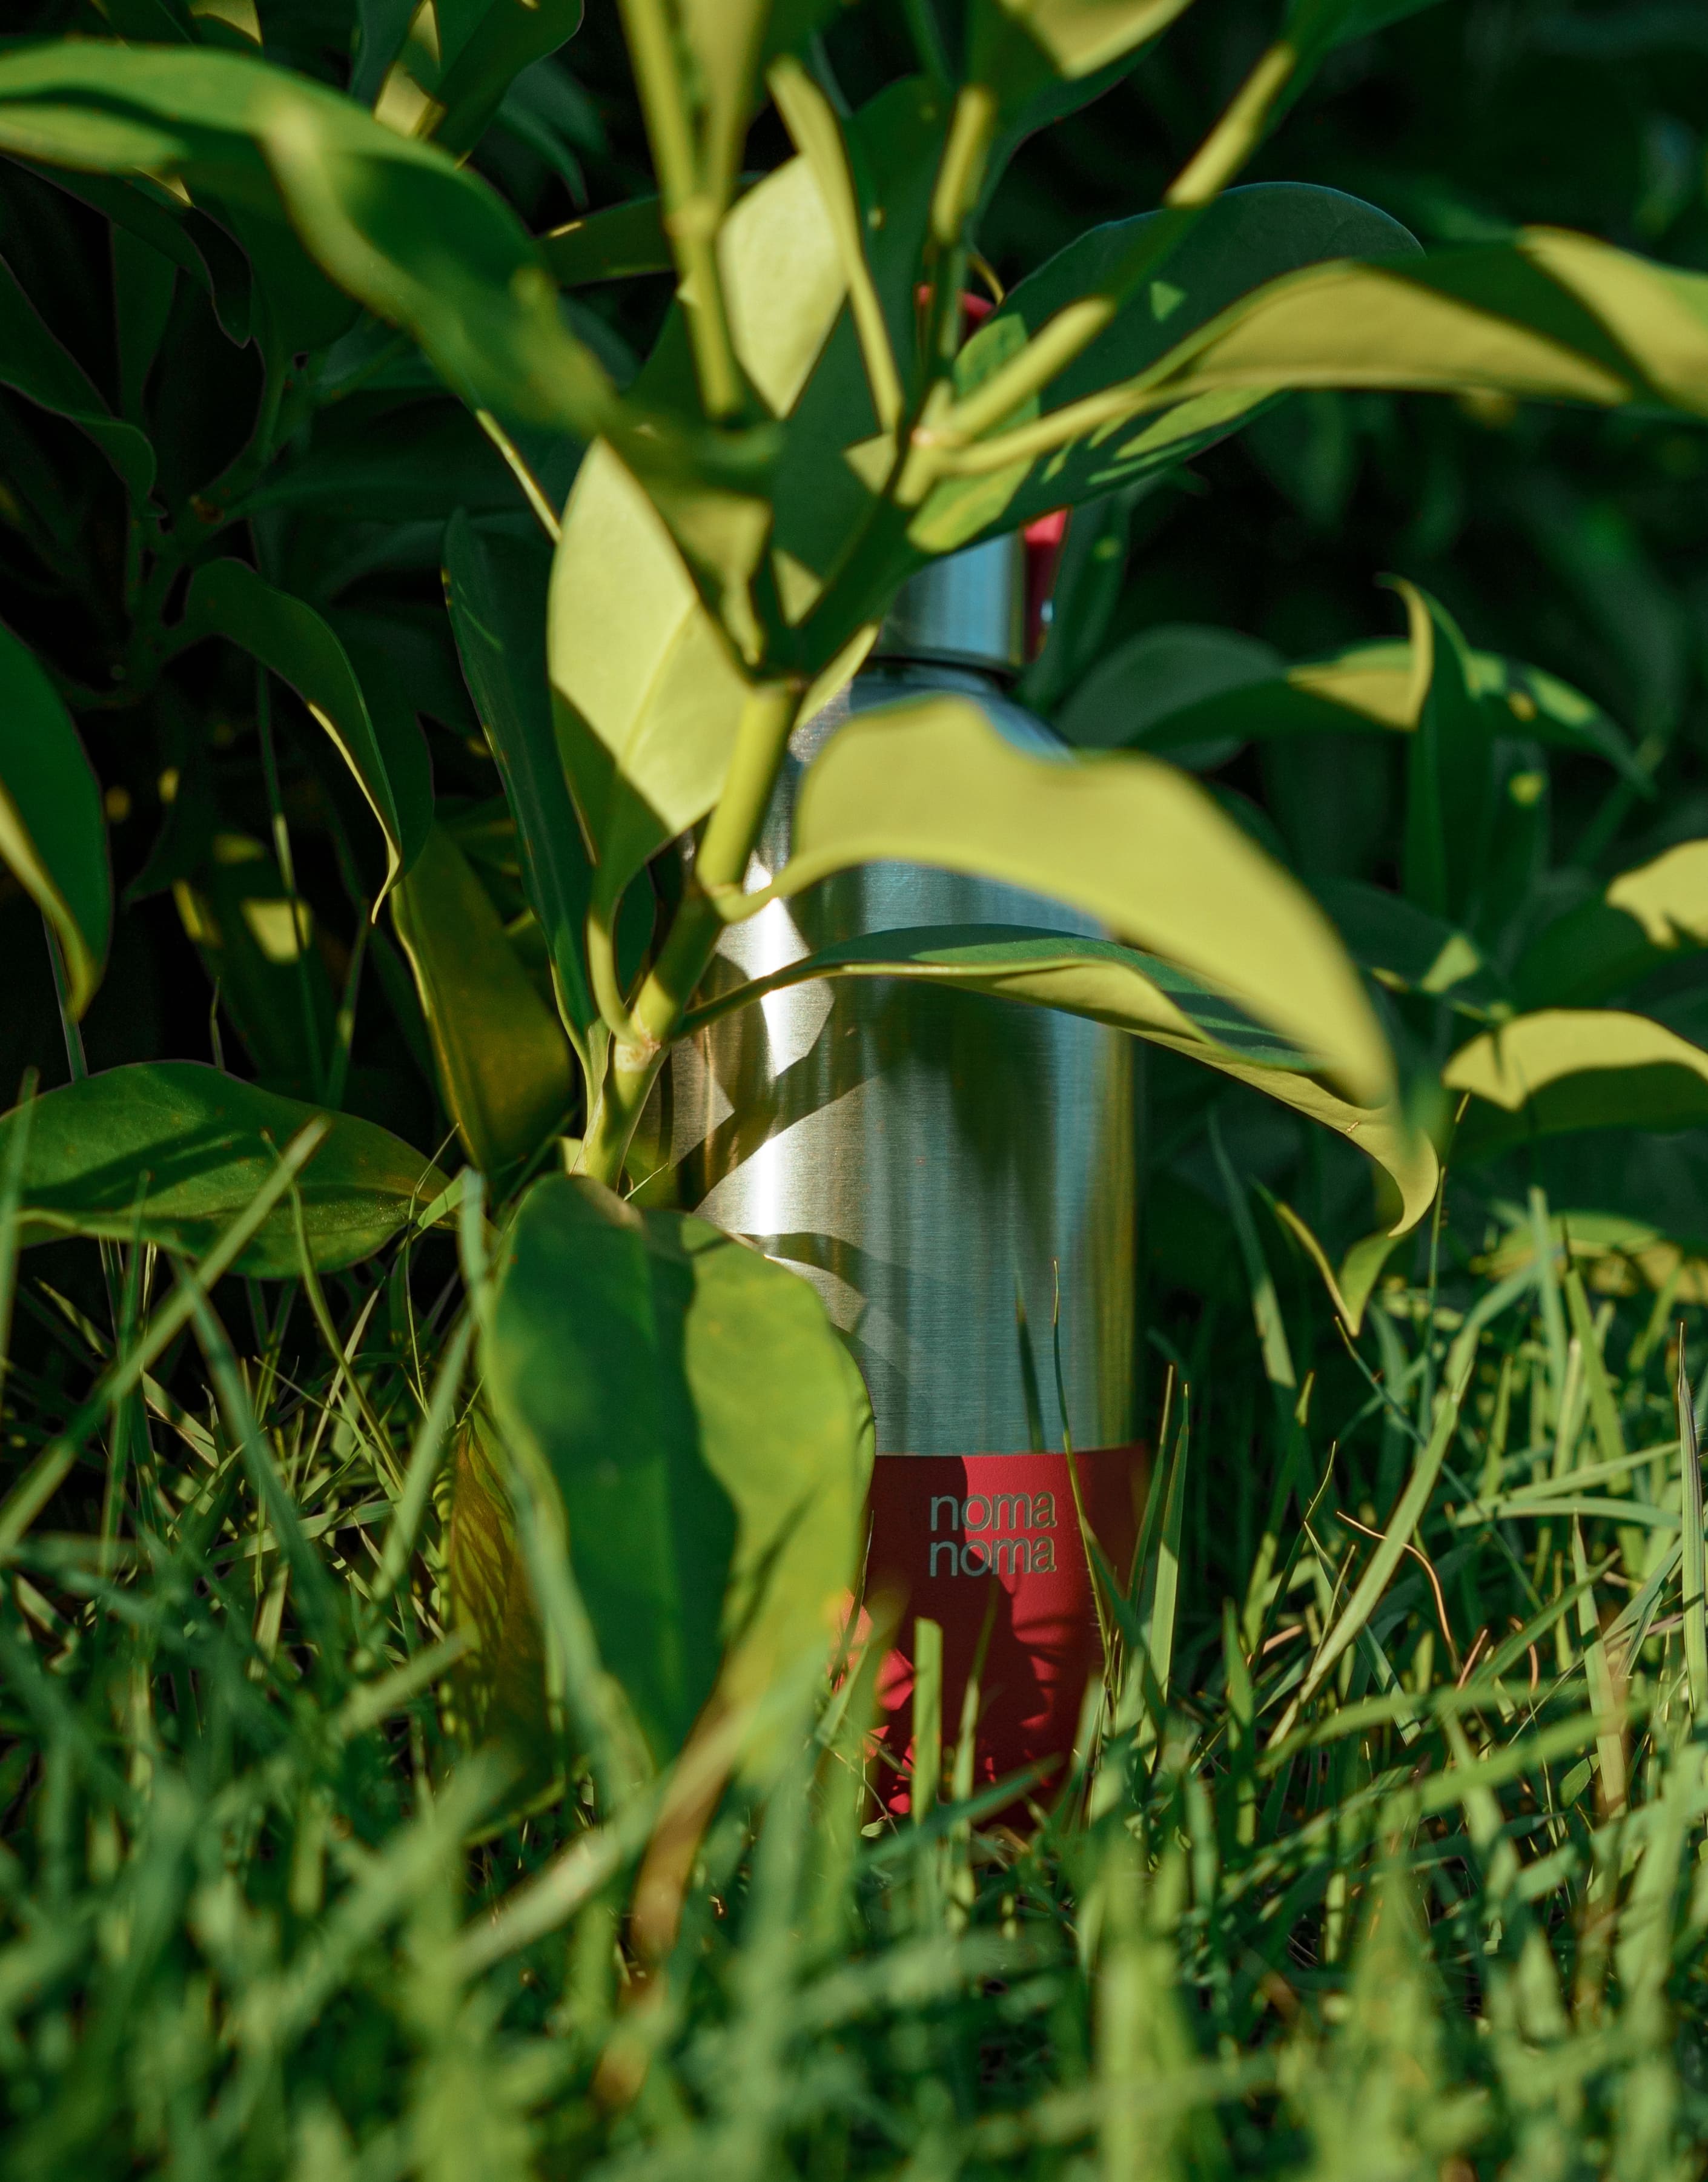 Die grenadine red Edelstahltrinkflasche von noma noma steht im Gras und wird von einem Grashalm leicht versteckt.